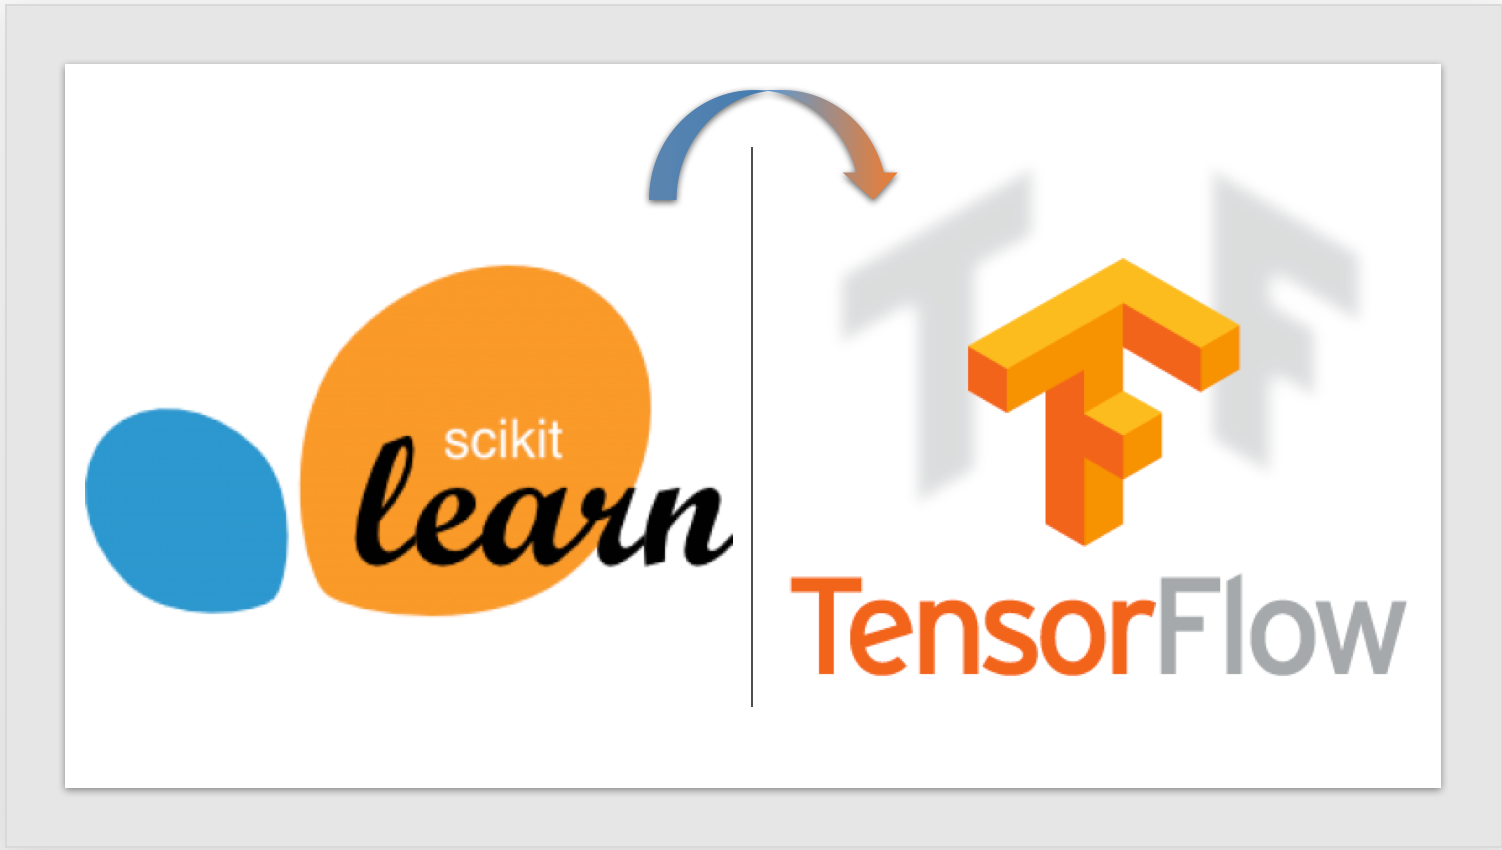 tensorflow scikit learn